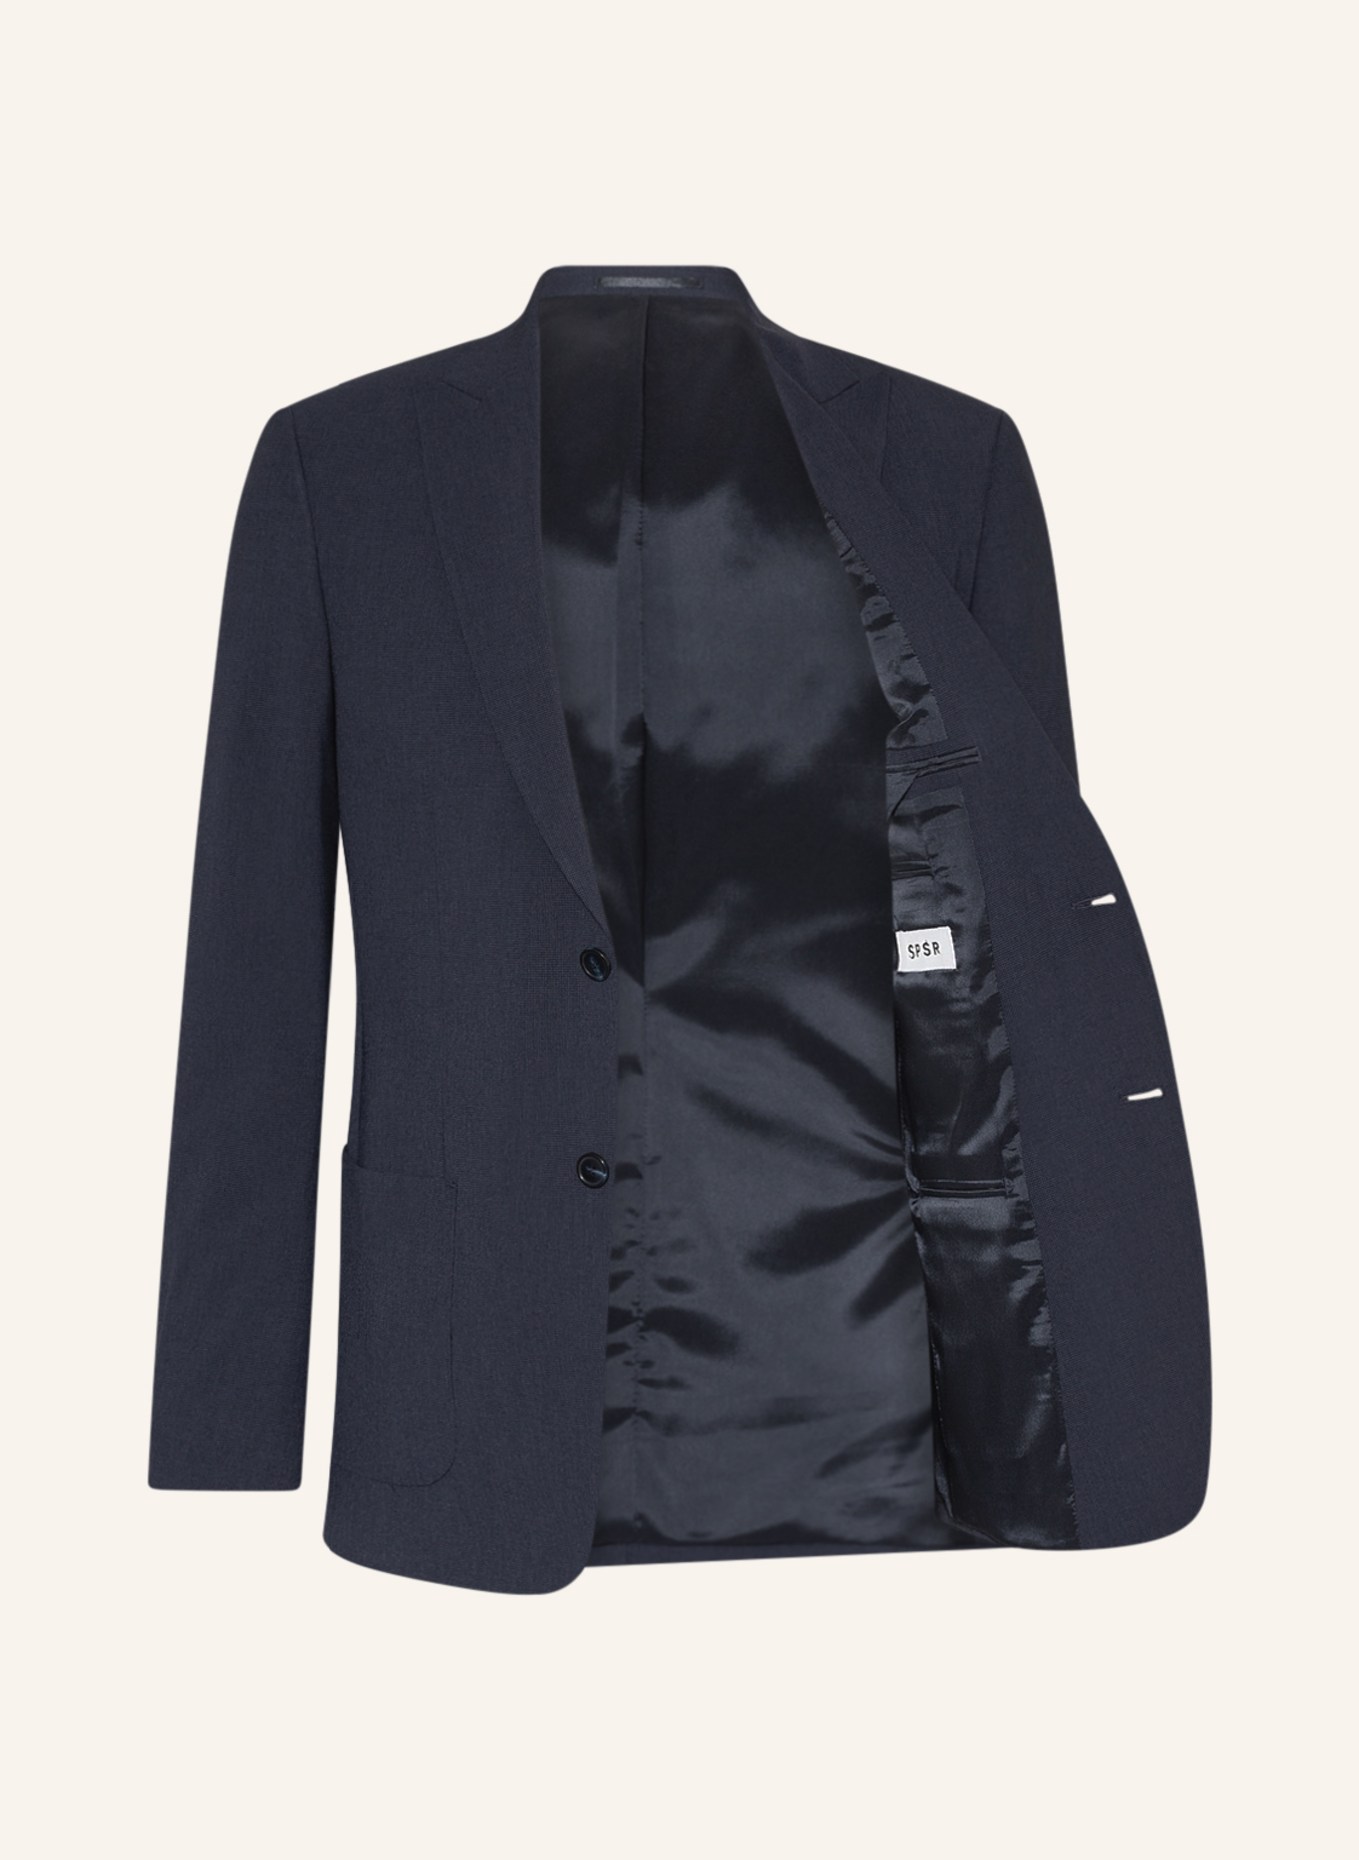 SPSR Suit jacket extra slim fit , Color: 53C3009 Houndstooth Blue (Image 4)